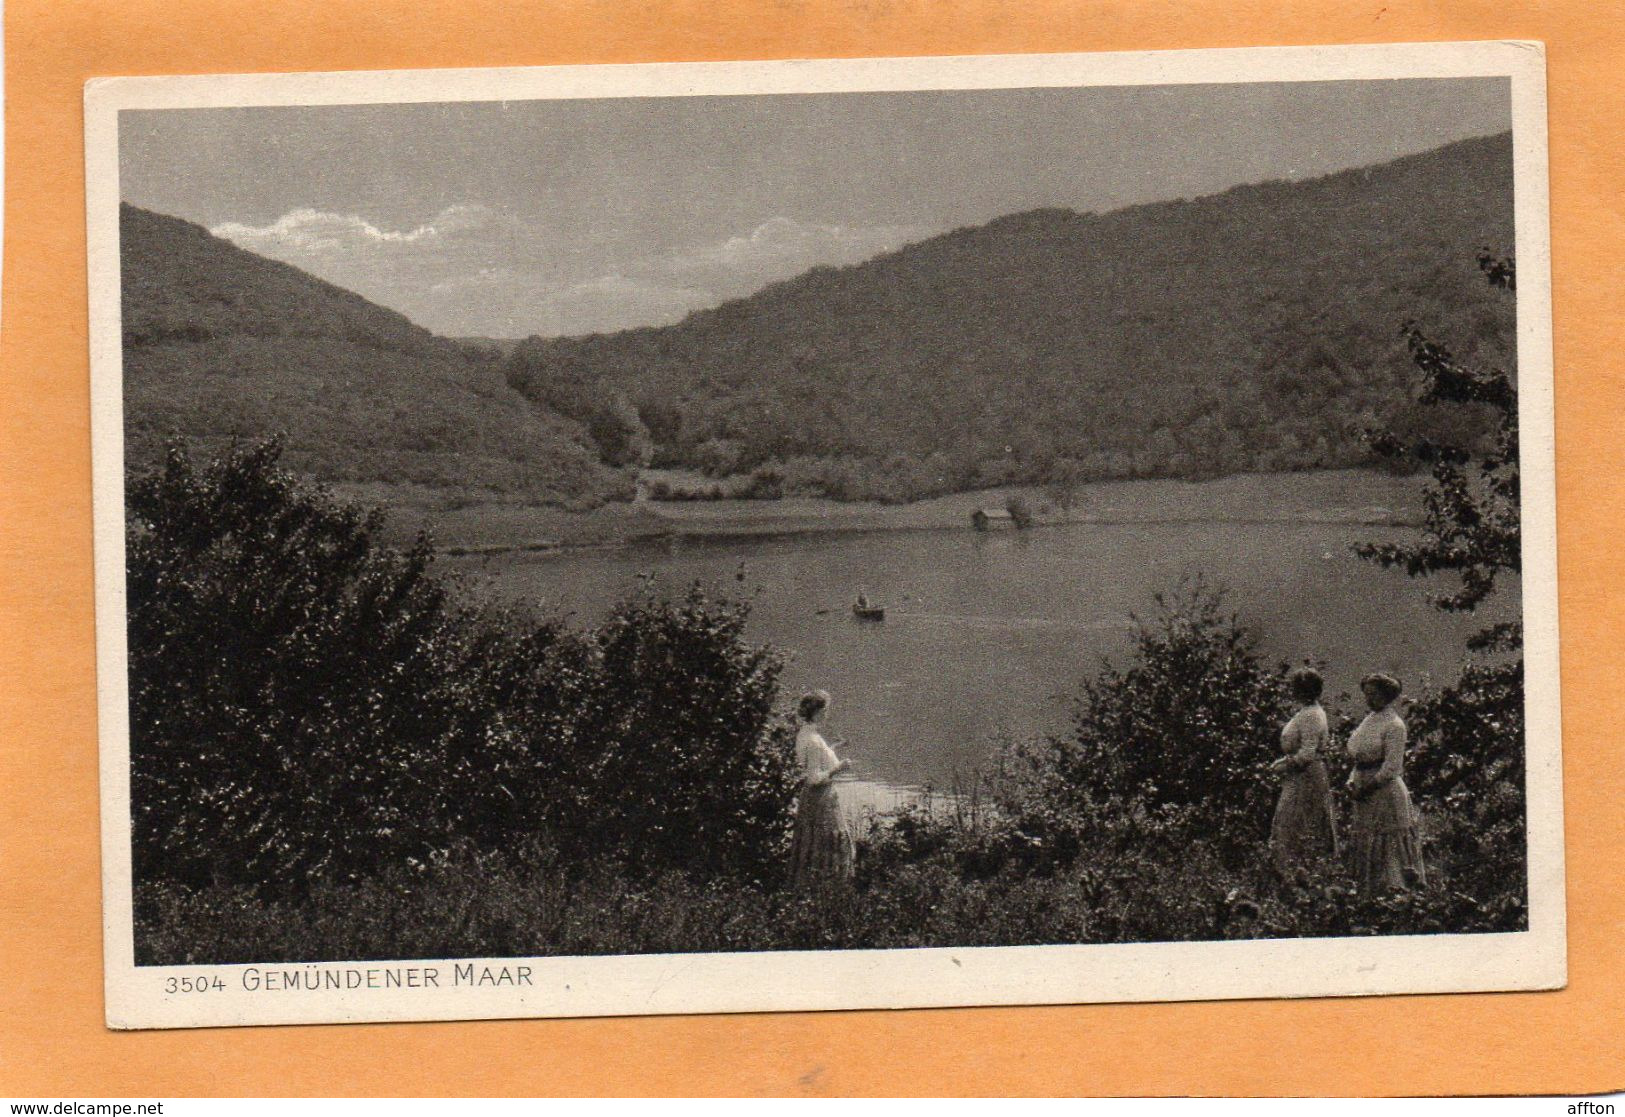 Daun Eifel Gemundener Maar Germany 1920 Postcard - Daun